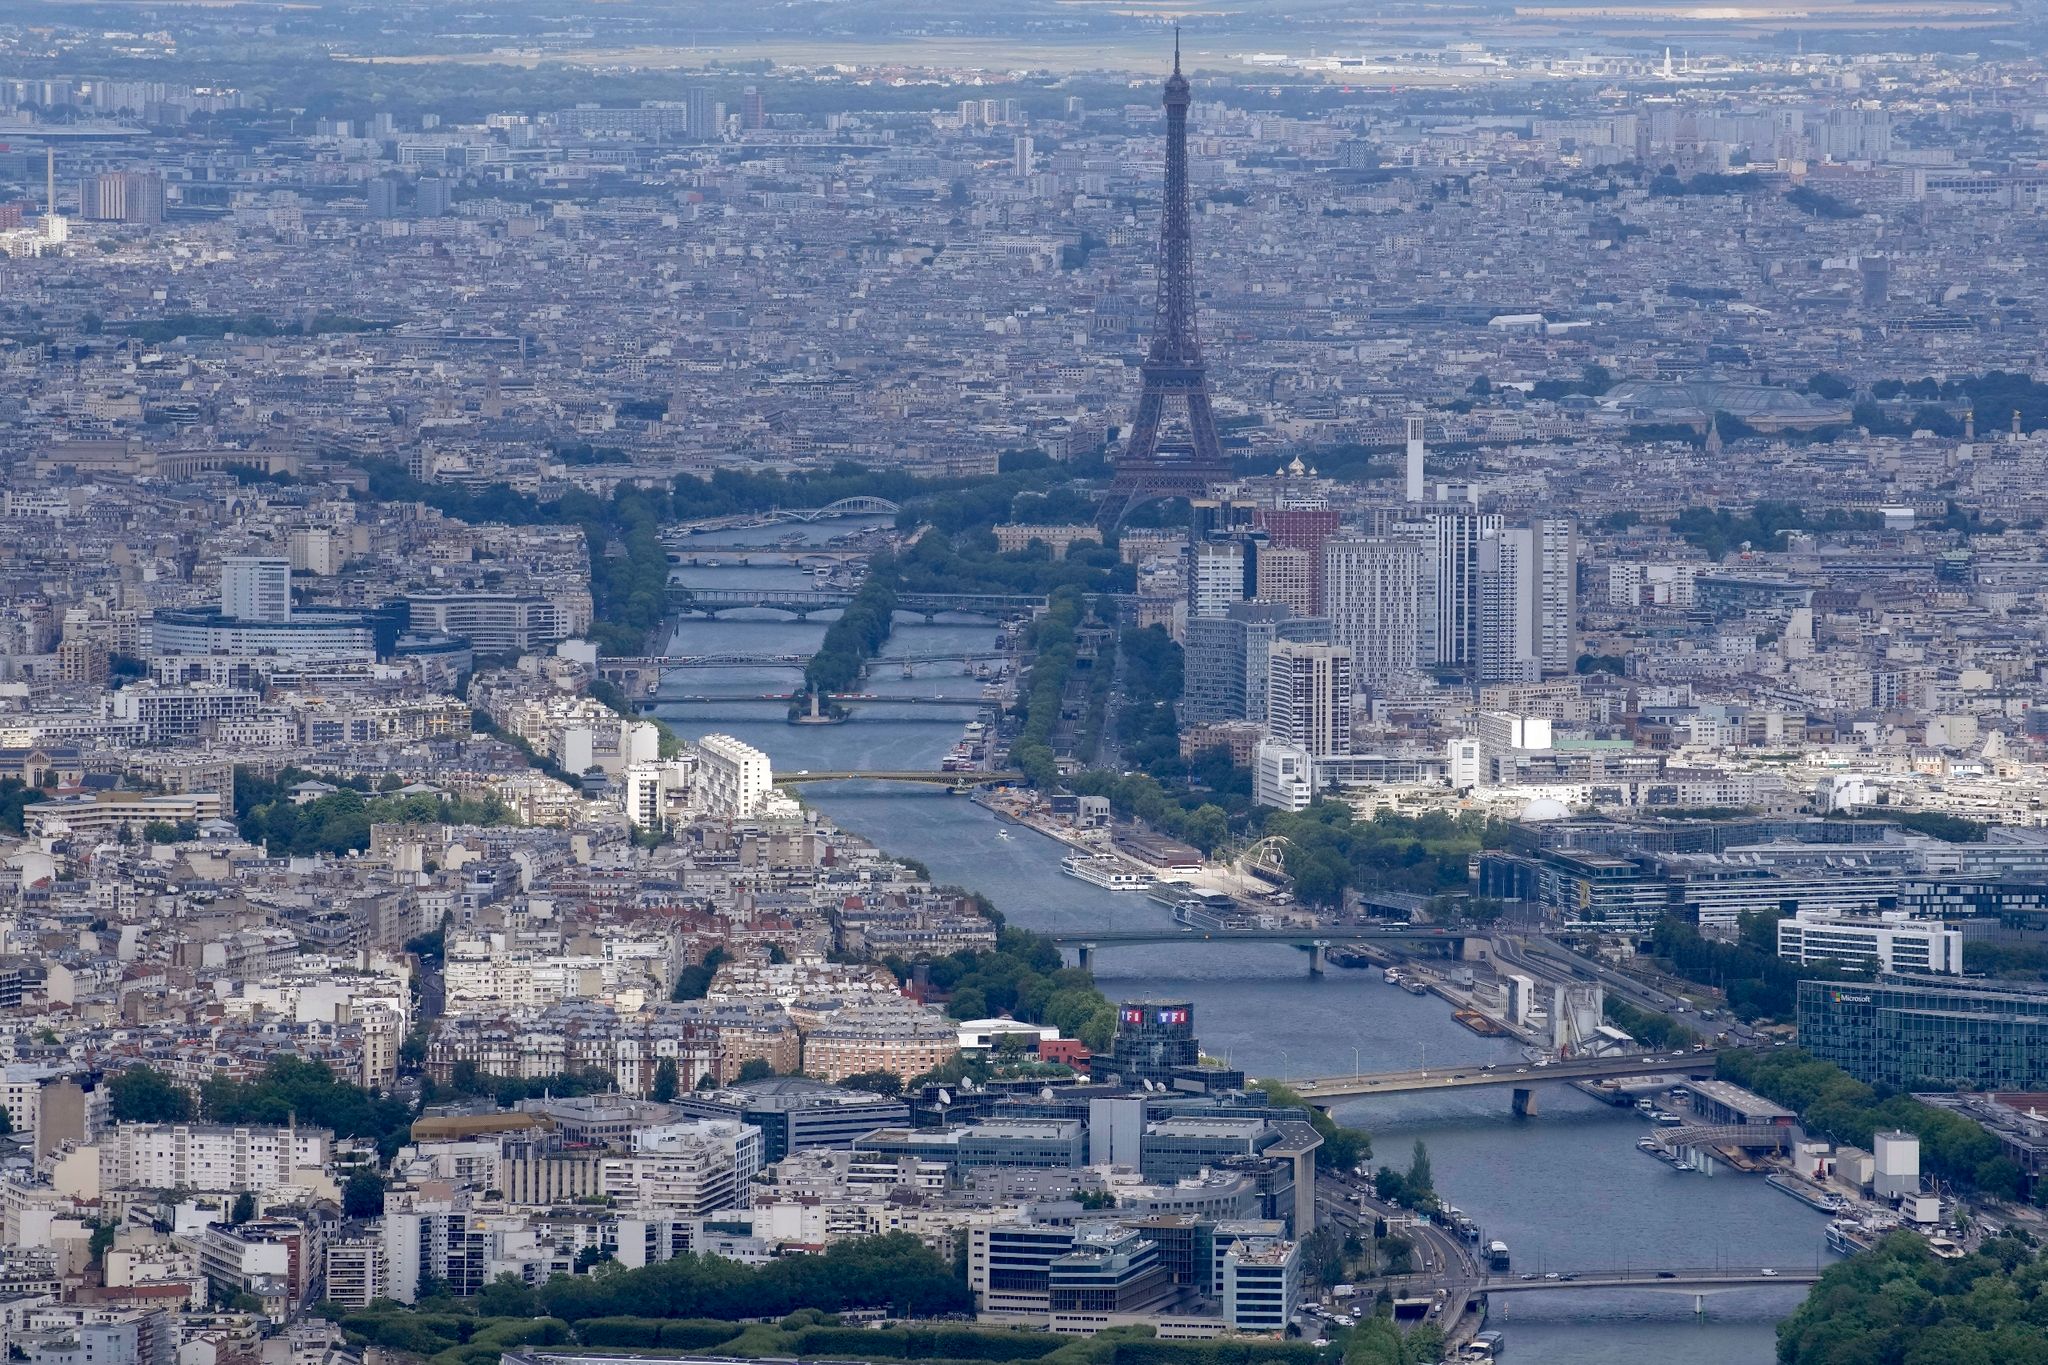 Blick auf die Seine, die am Eiffelturm vorbei durch Paris fließt.